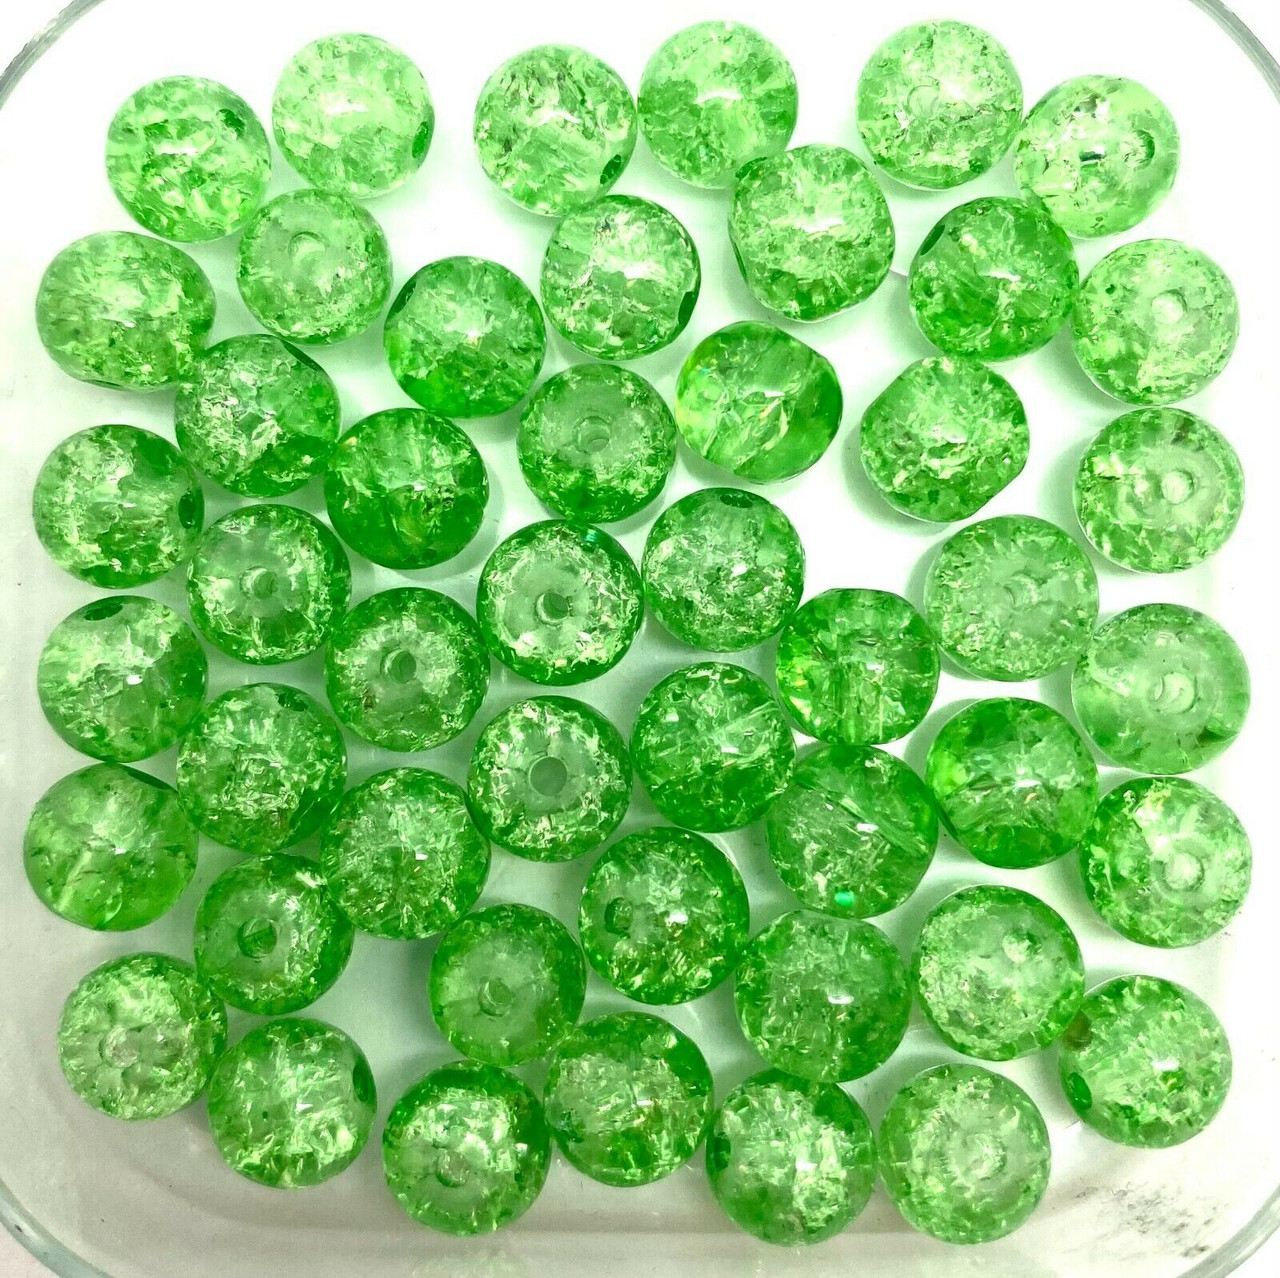 4mm Crackle Glass Beads - Grass Green, 200 beads